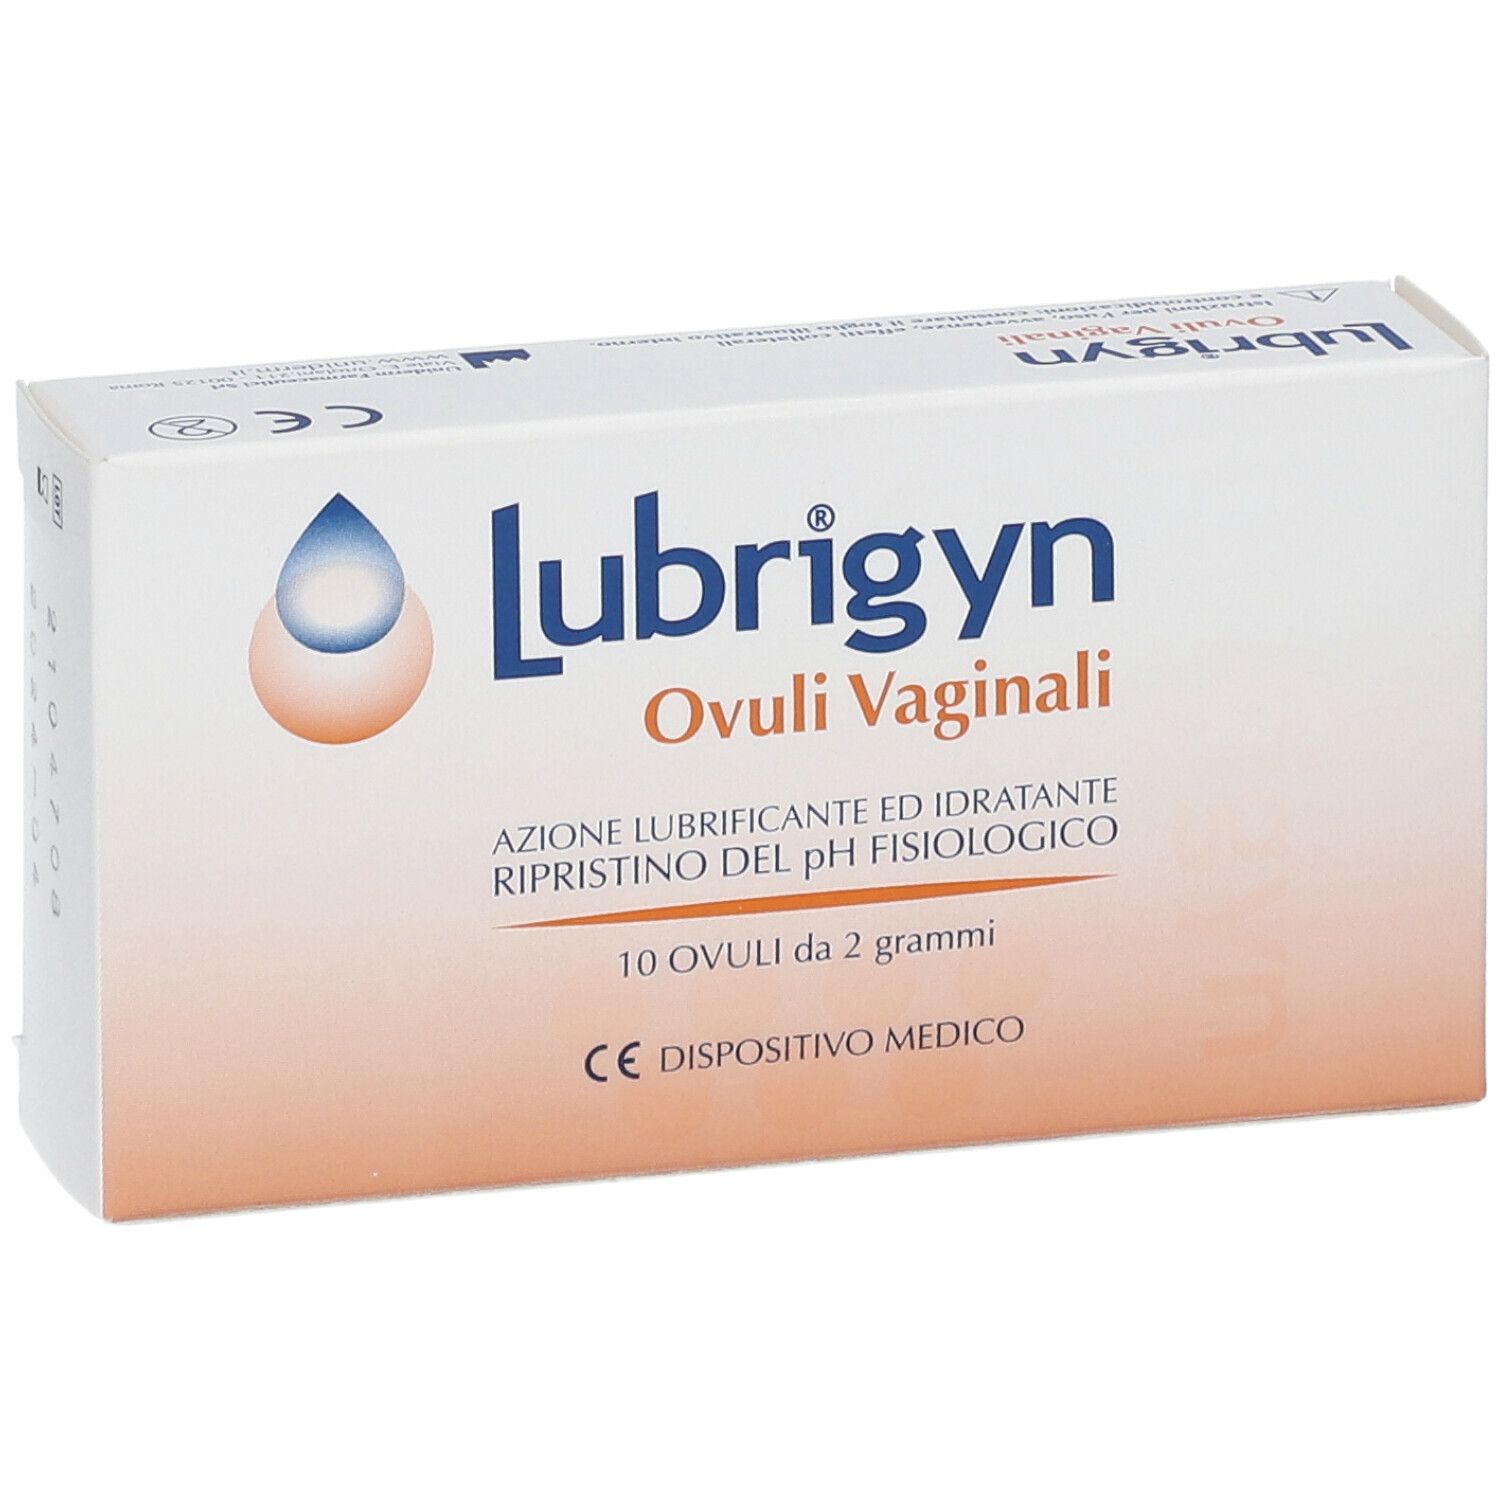 VIDERMINA Lubripiù Ovuli Vaginali 10 Ovuli - LloydsFarmacia